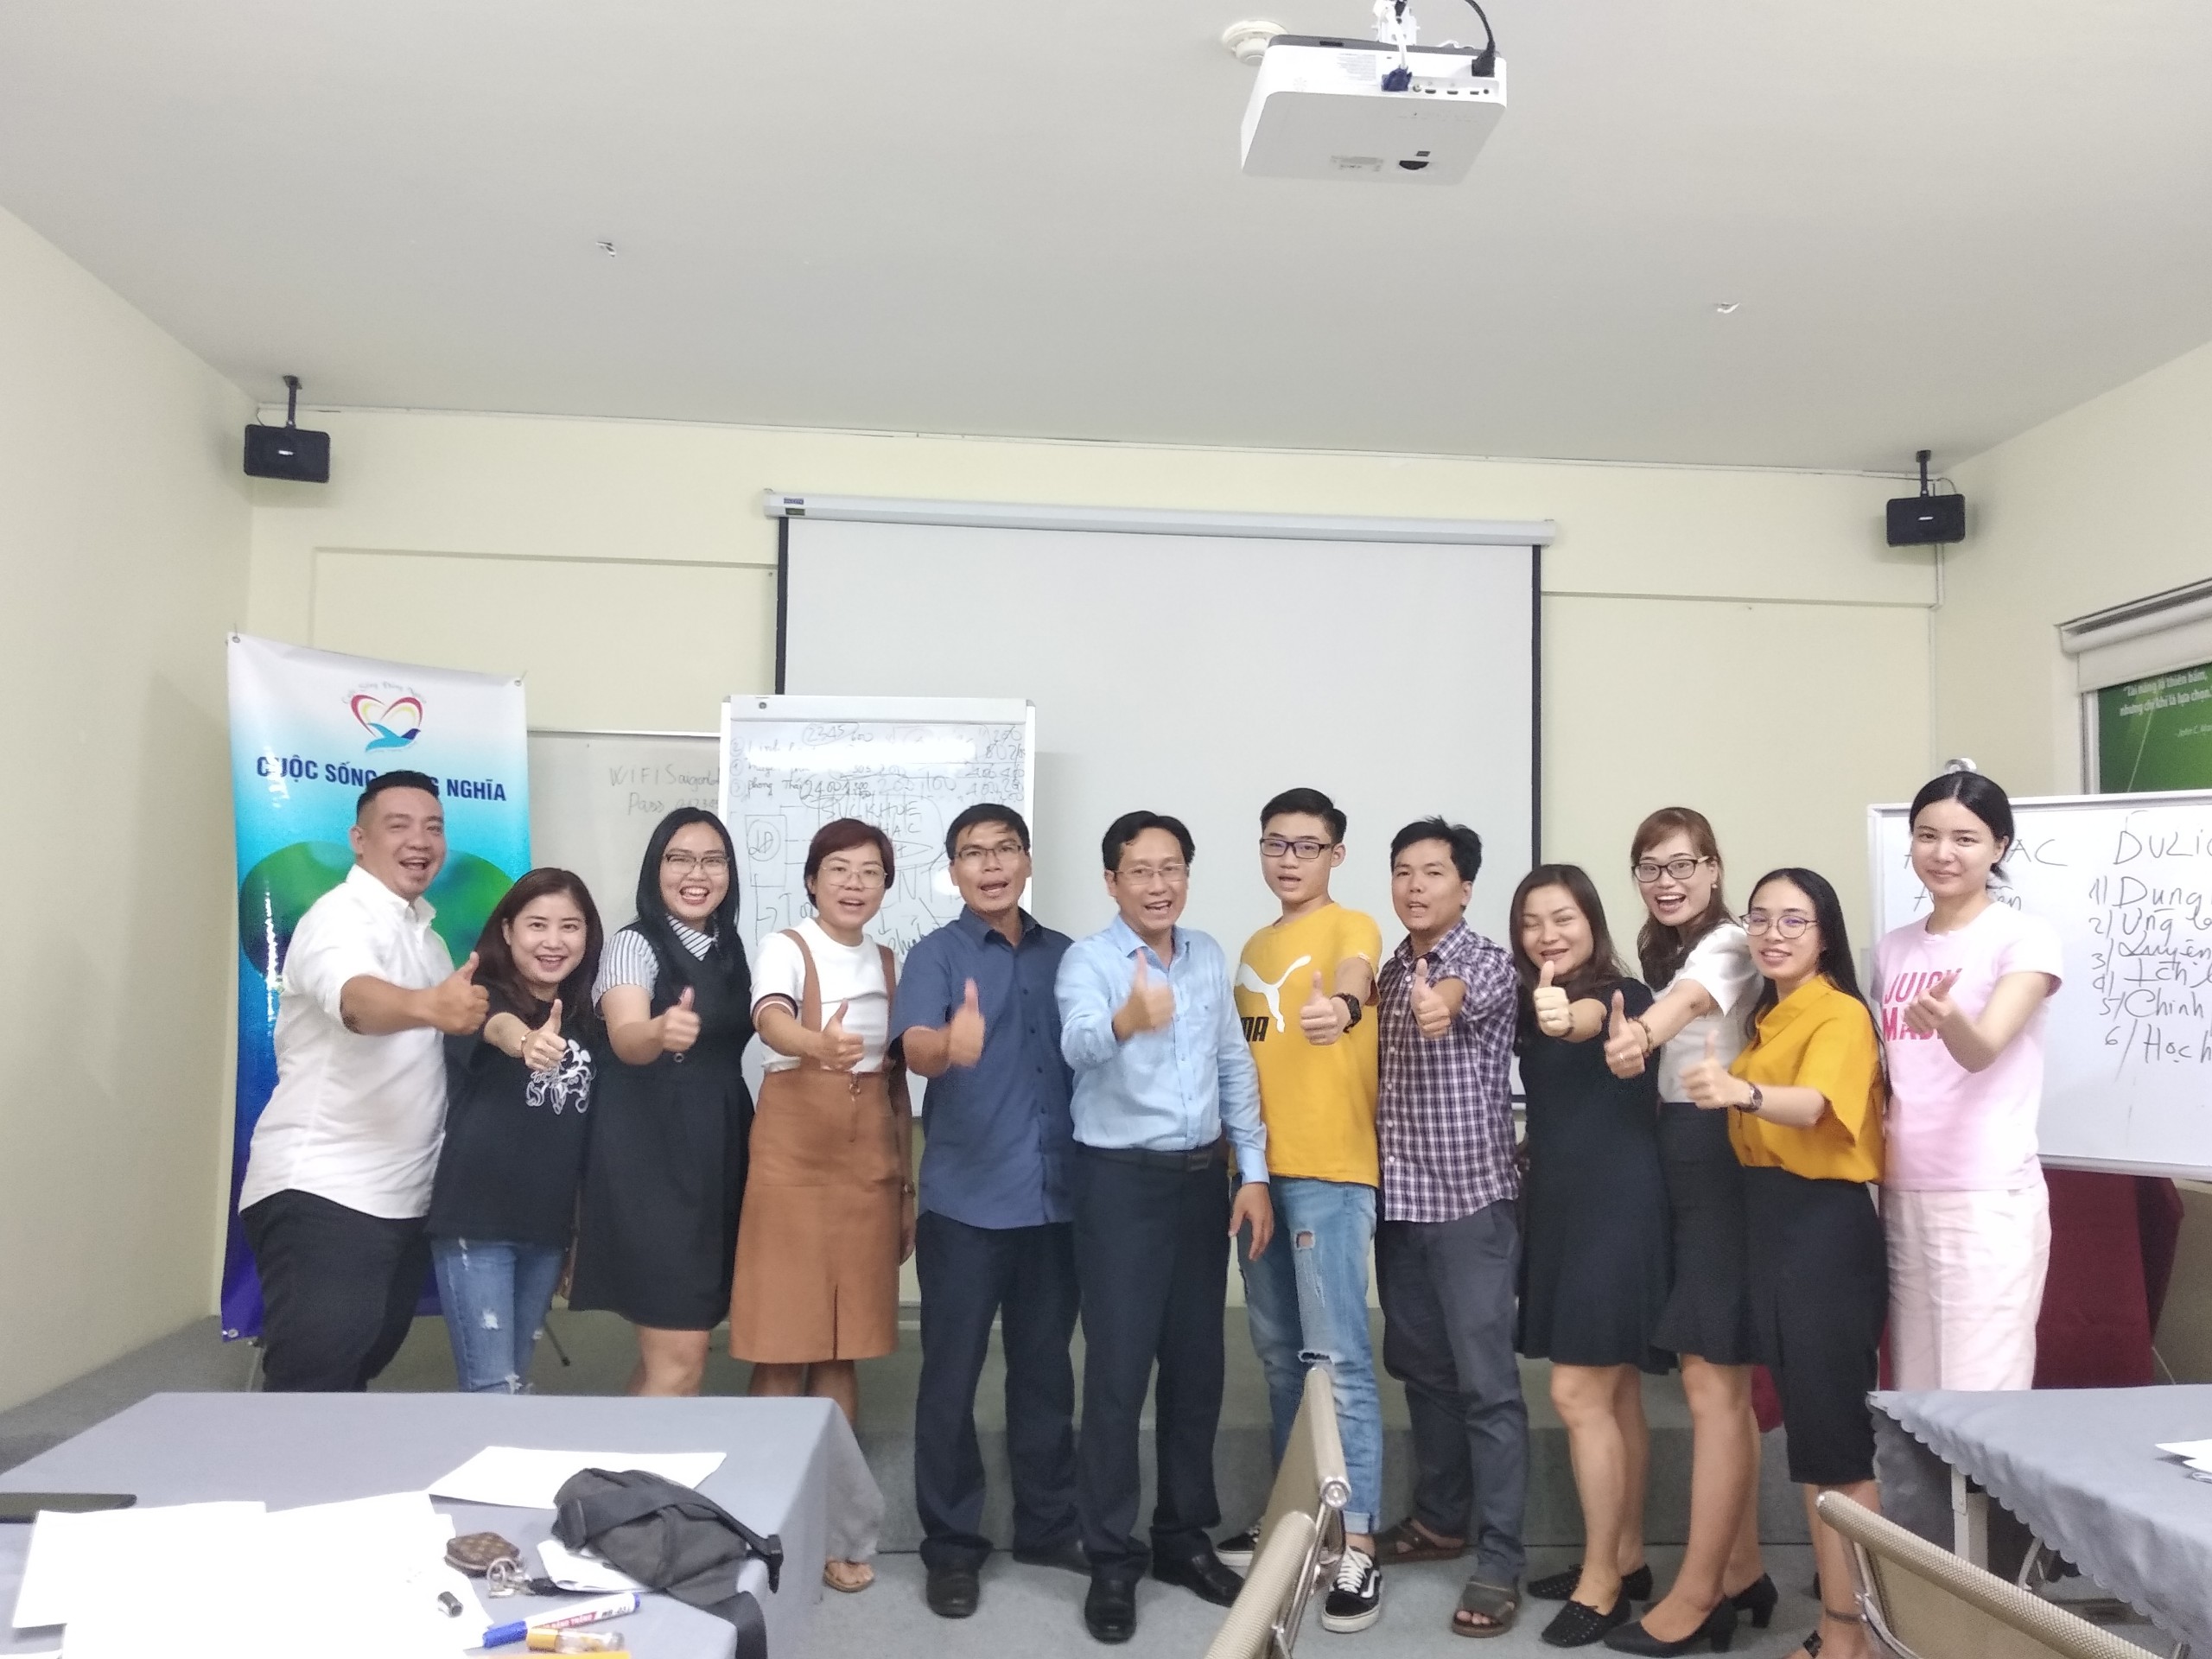 Đào tạo public: “Kỹ Năng Giao Tiếp và Thuyết Trình Thuyết Phục” tại Hồ Chí Minh tháng 07 năm 2019